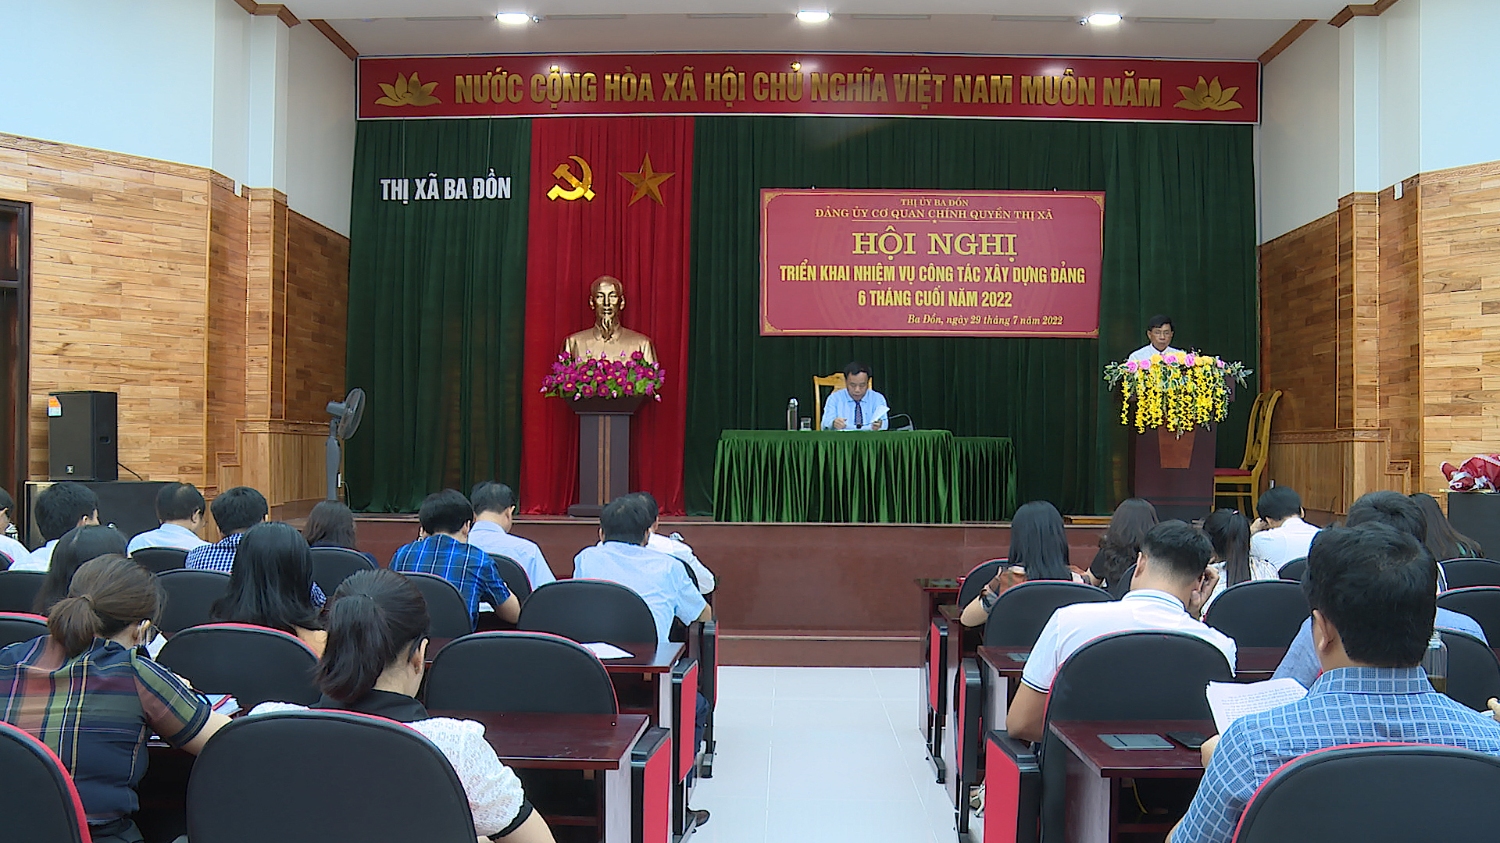 Đảng bộ cơ quan chính quyền thị xã Ba Đồn triển khai nhiệm vụ công tác xây dựng Đảng 6 tháng cuối năm 2022